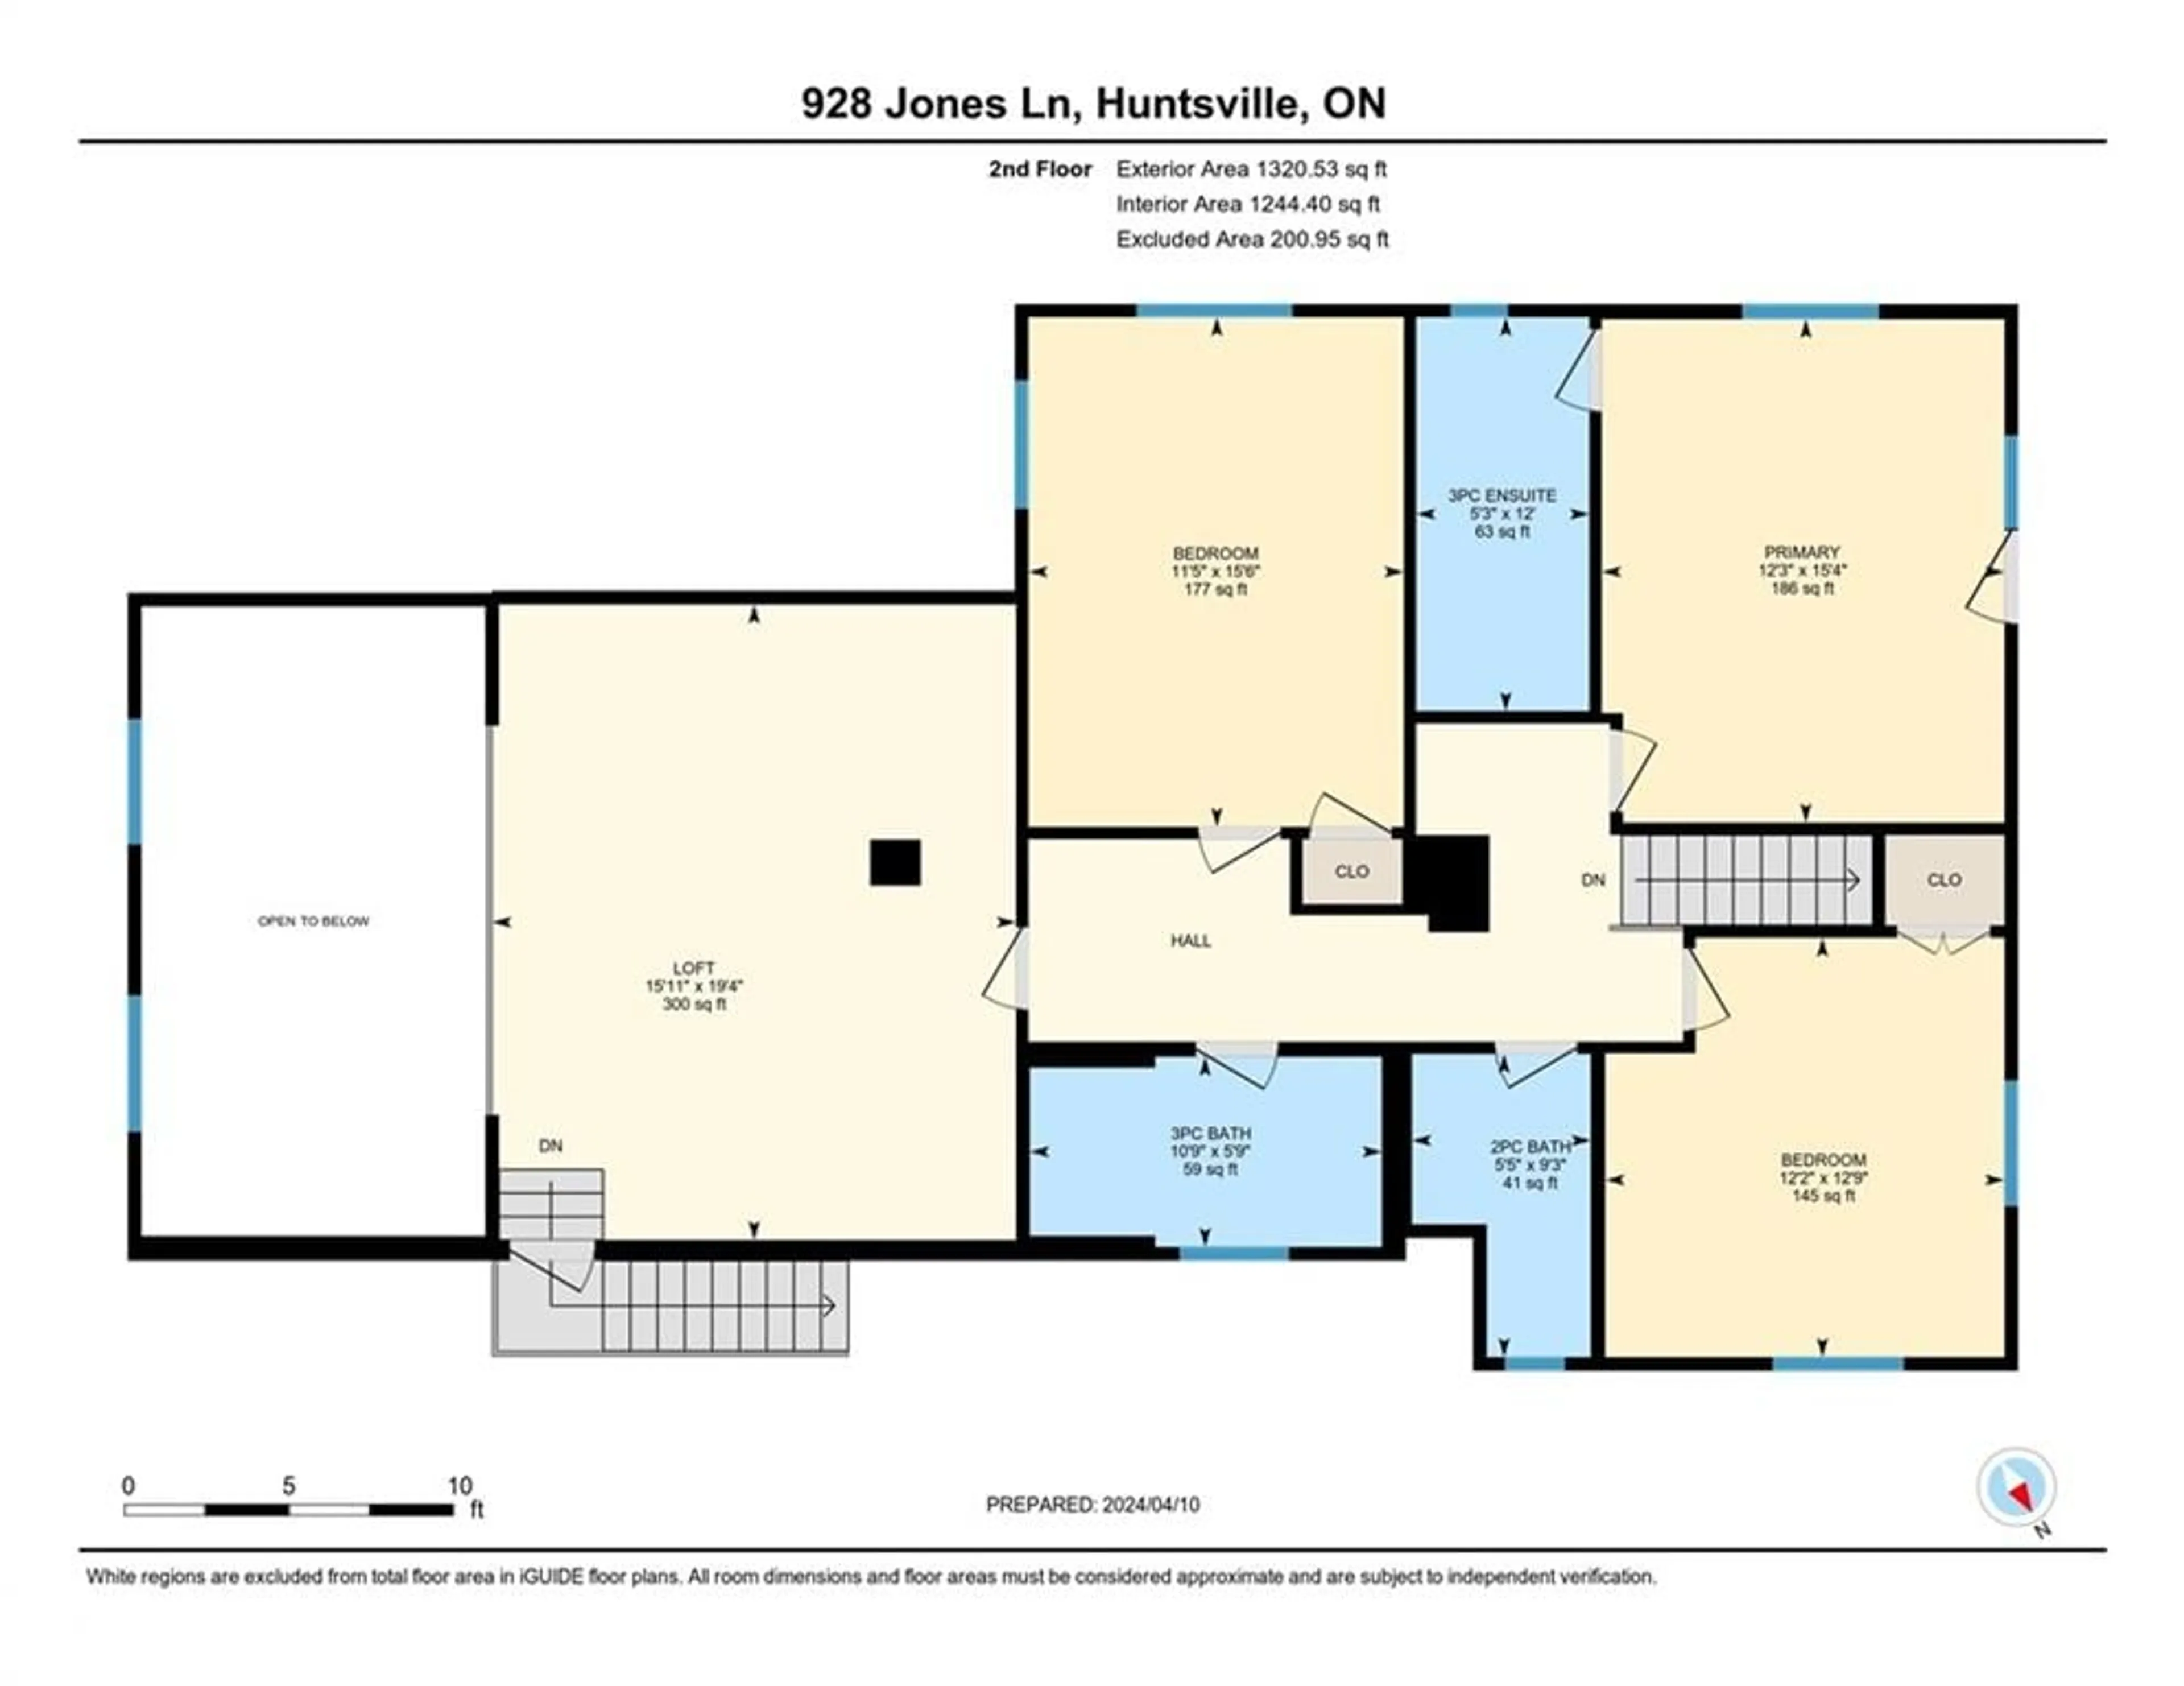 Floor plan for 928 Jones Lane, Huntsville Ontario P1H 1B2